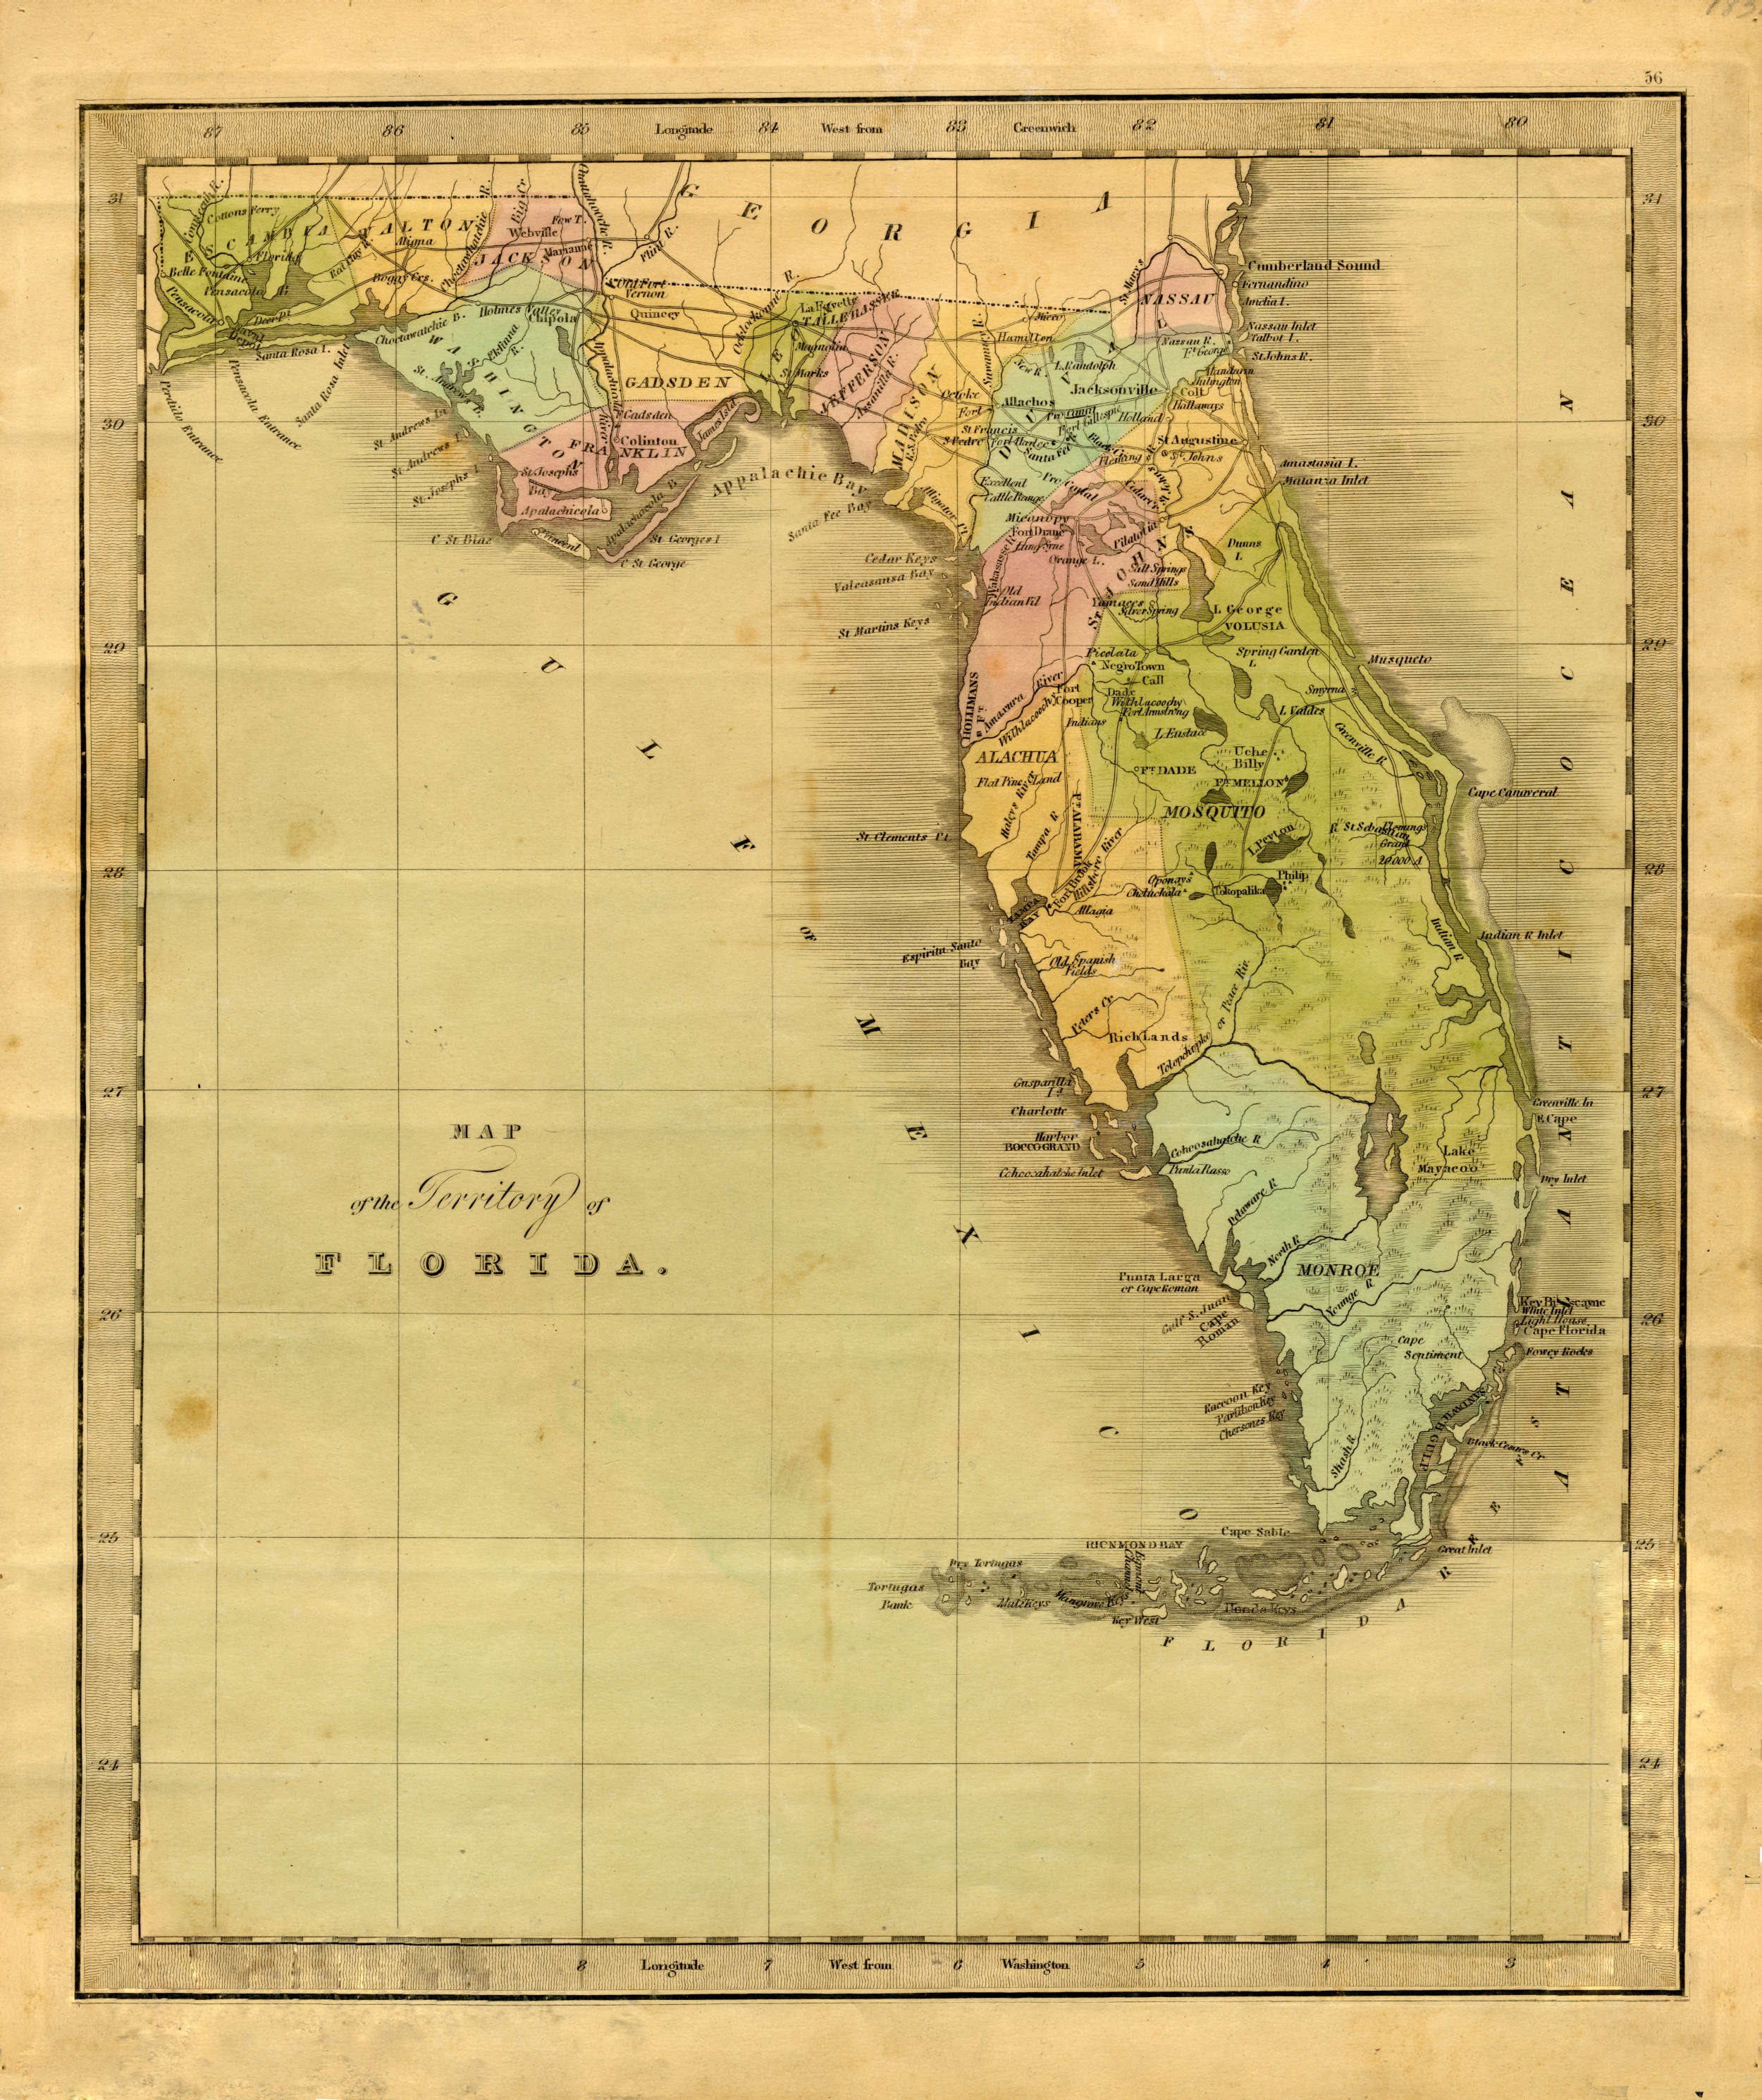 Territorial Florida, 1834